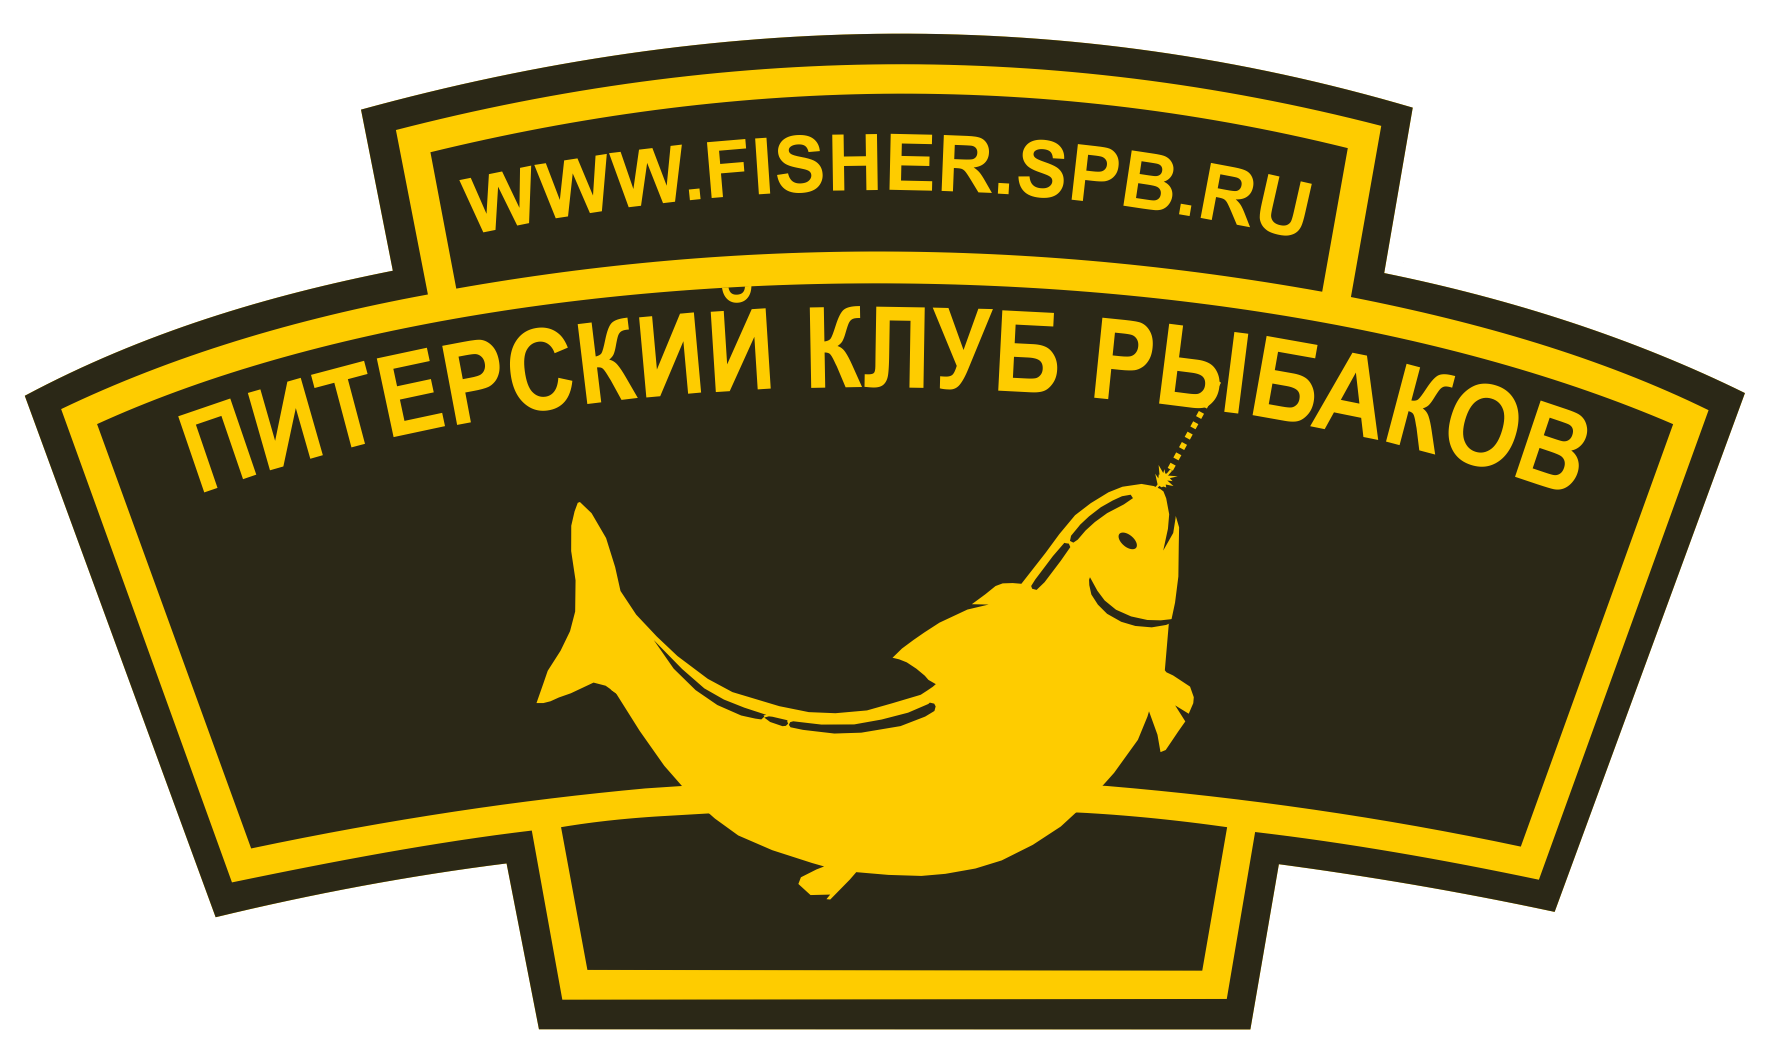 Объявления - Форум Питерского Клуба рыбаков